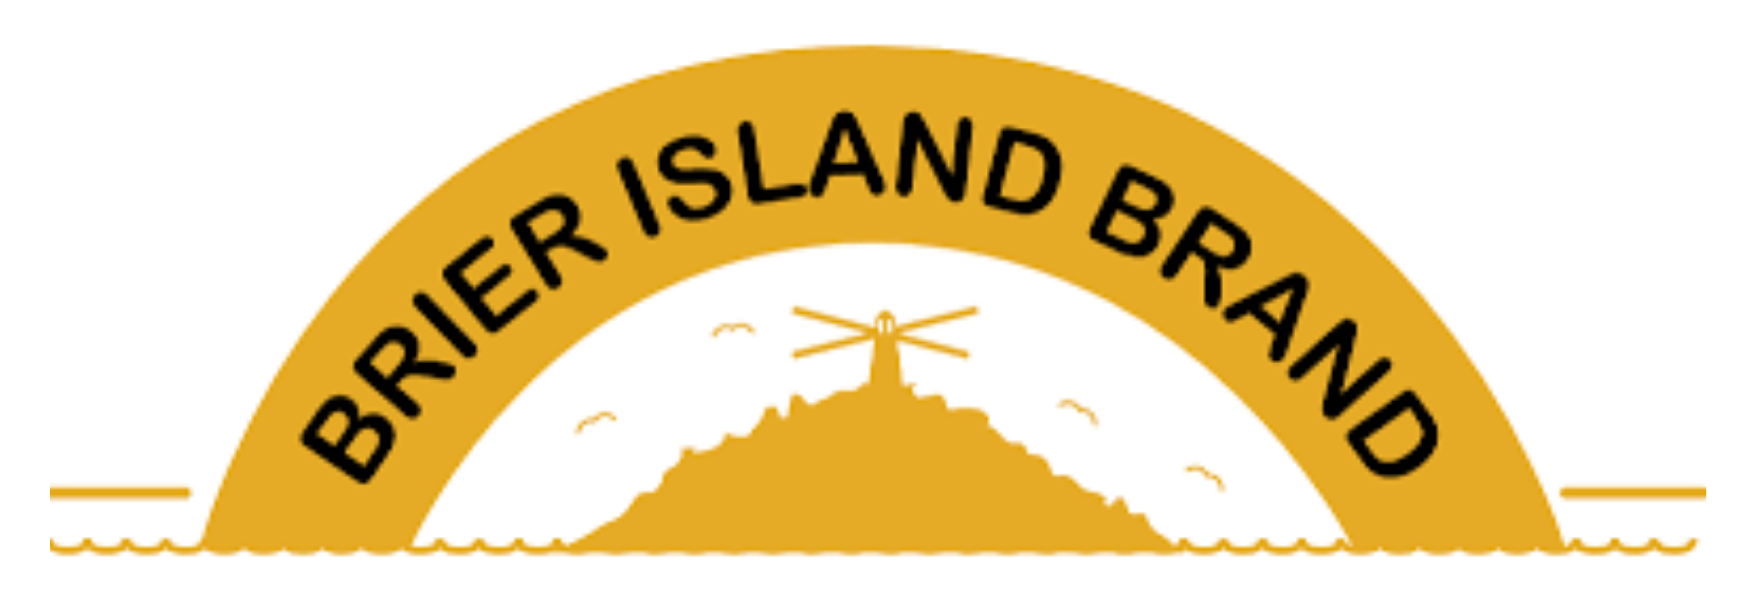 Brier Island Brand